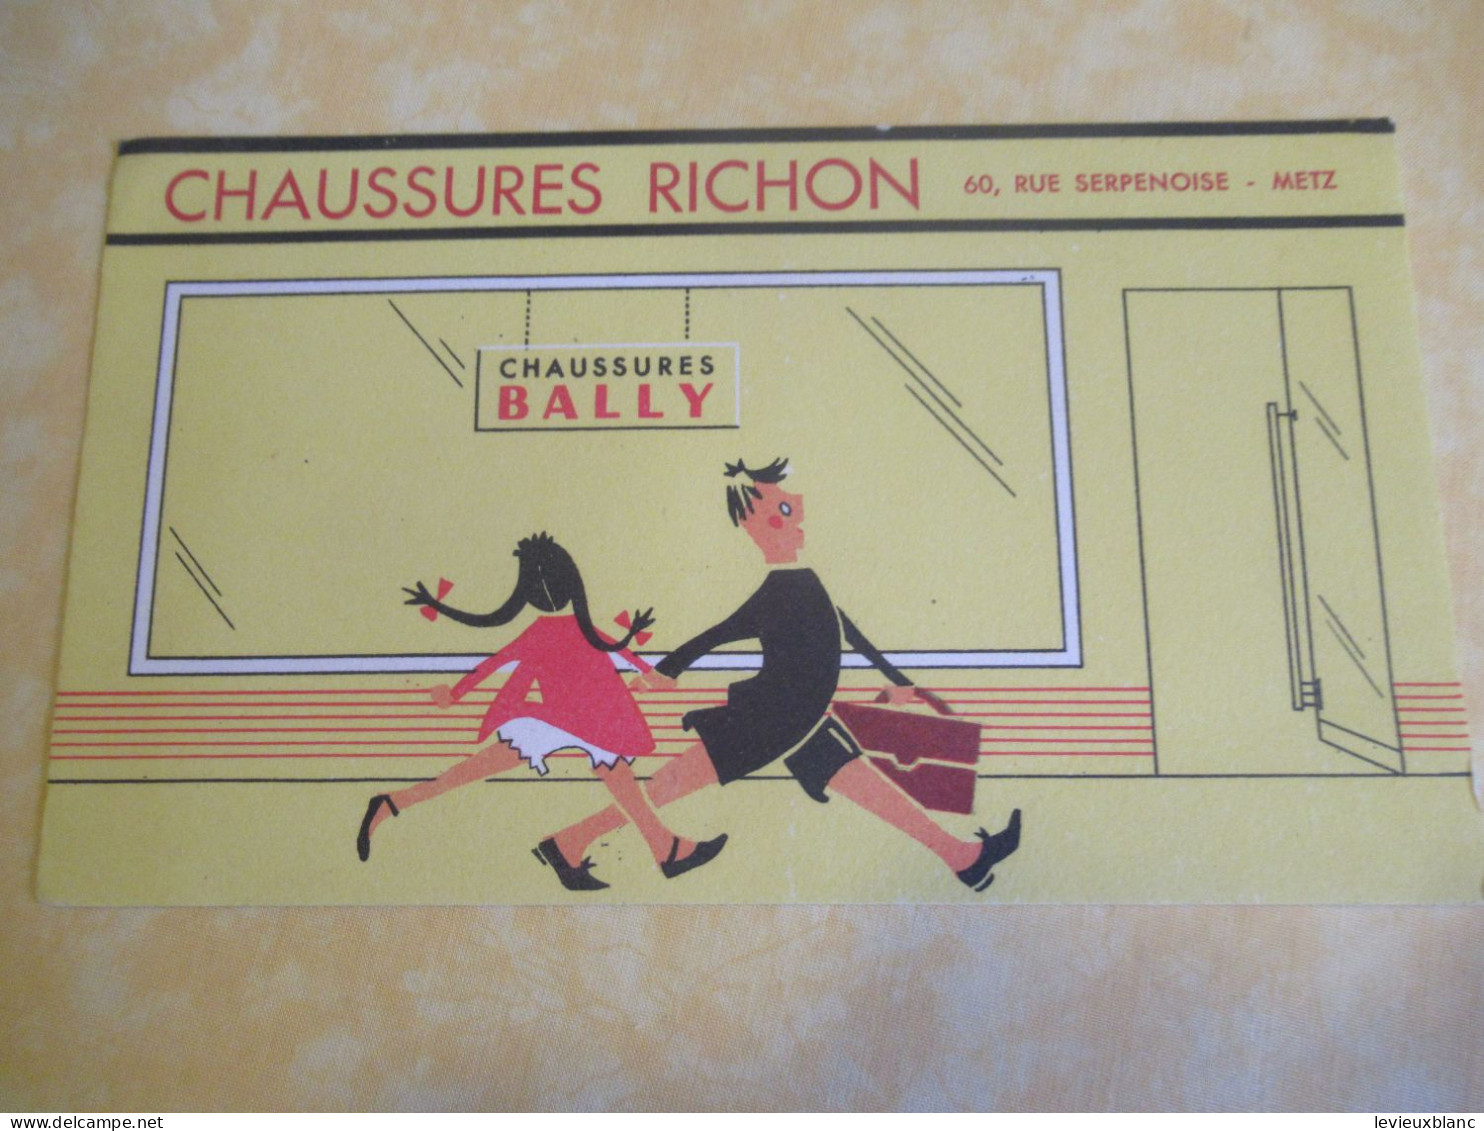 Chaussures BALLY/ Chaussures RICHON/ METZ/Enfants Allant à L'Ecole//Vers 1950-1960         BUV677 - Scarpe